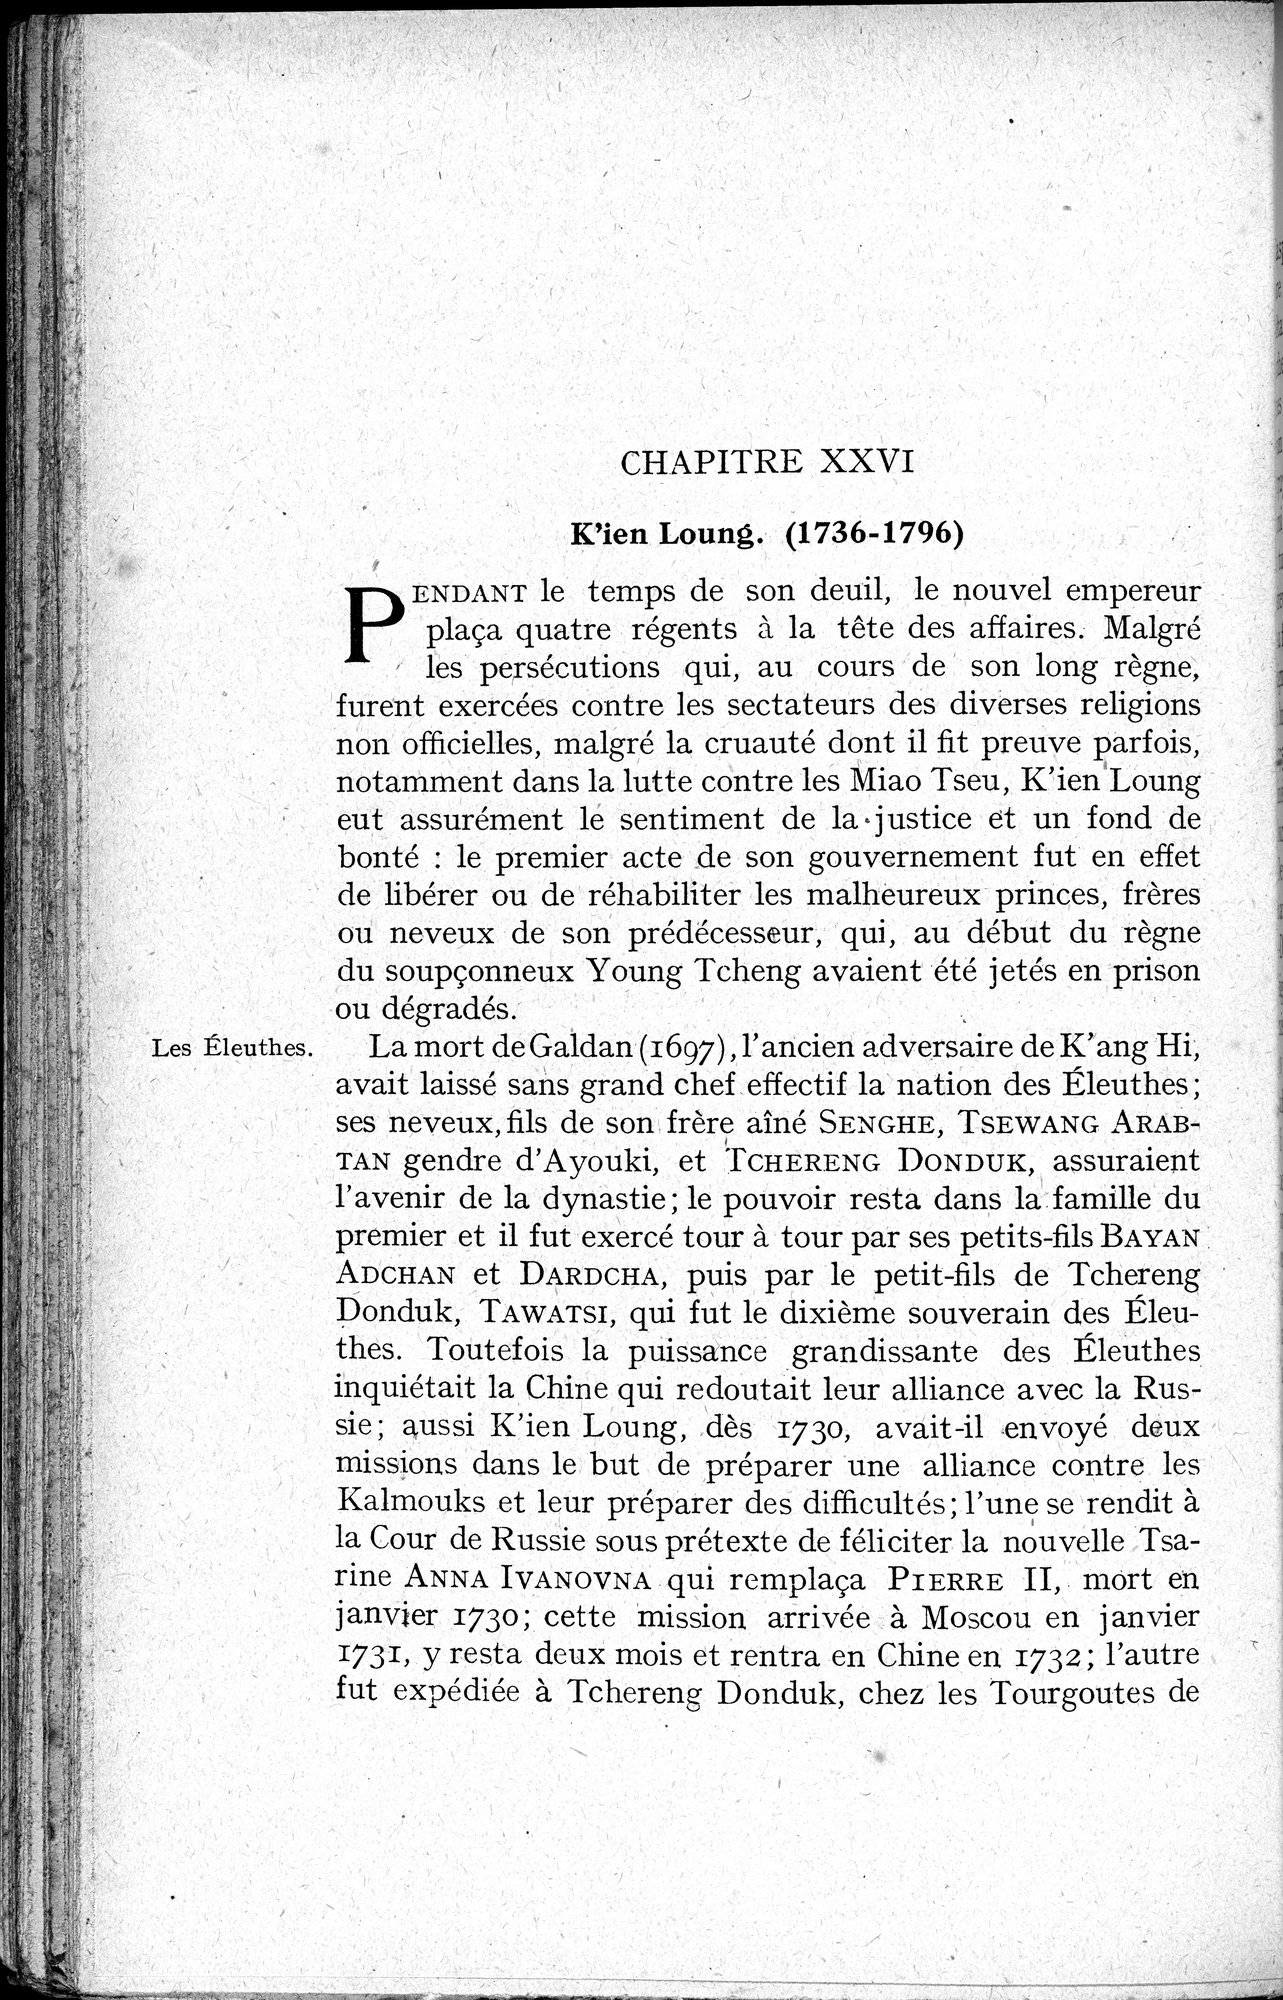 Histoire Générale de la Chine : vol.3 / Page 348 (Grayscale High Resolution Image)